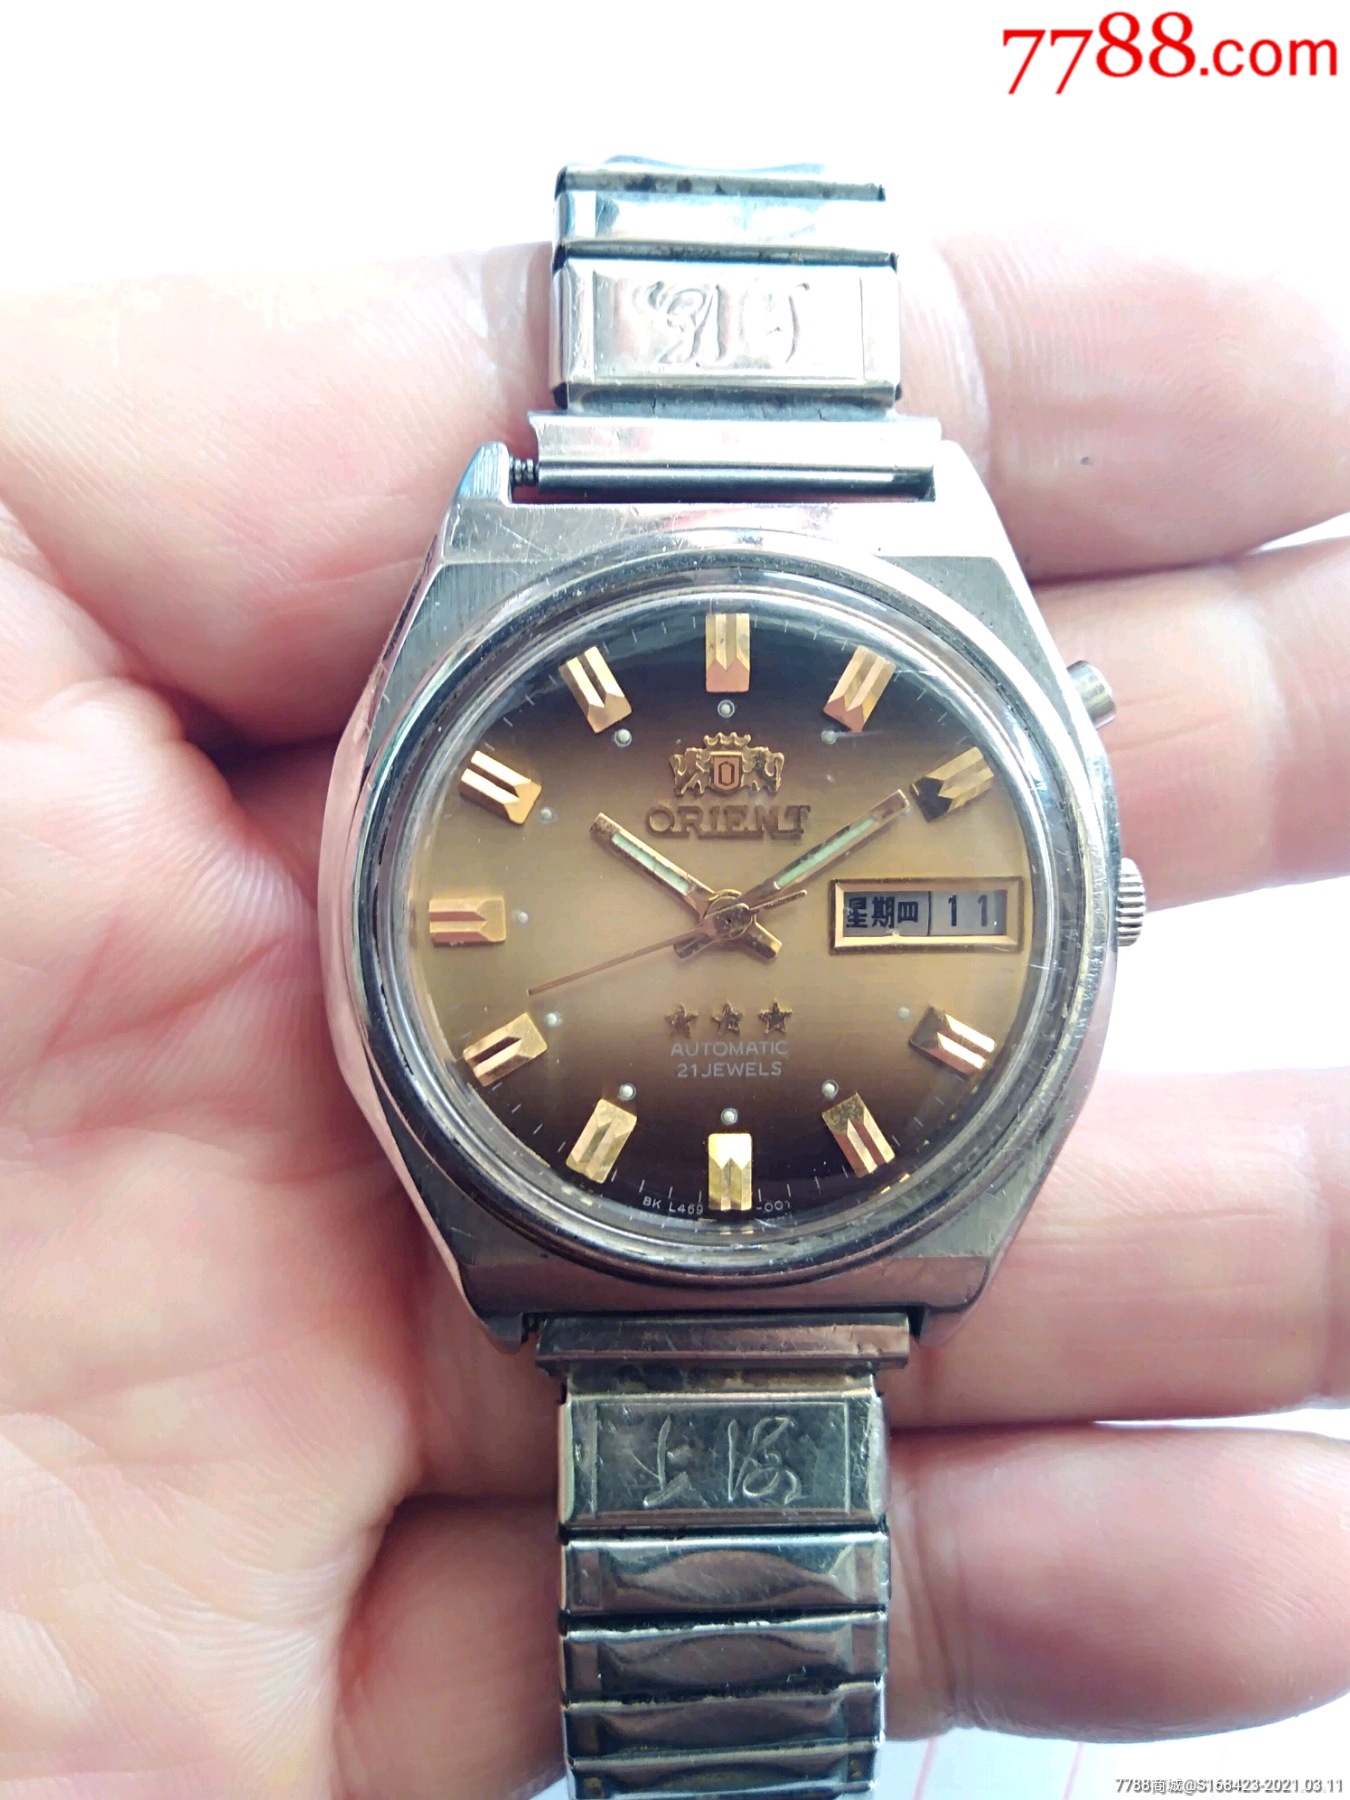 双狮三星自动表-价格:80.0000元-au25747948-手表